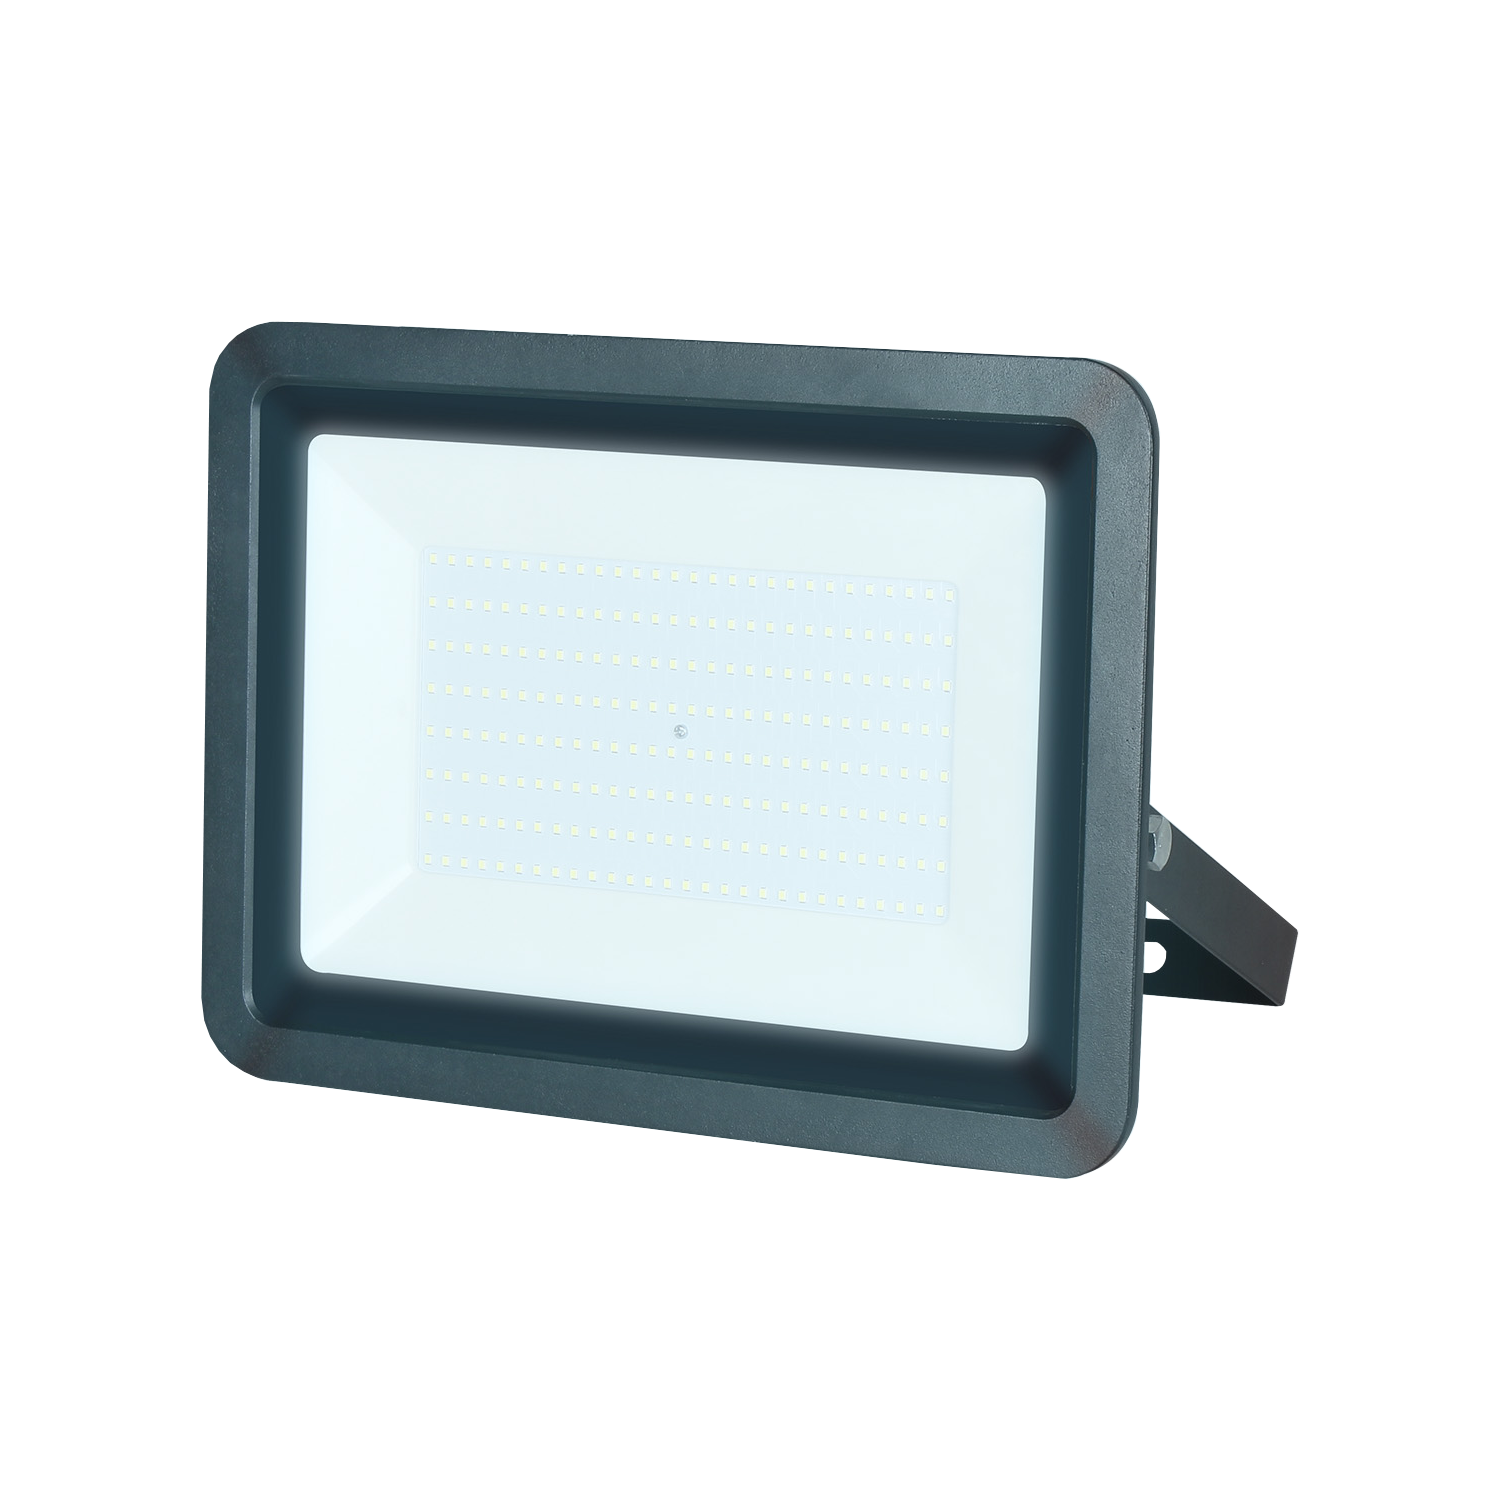 Reflector LED, IP 65, Uso exterior, 200 W, 18,000 lm, Alto desempeño, RL-36200.N